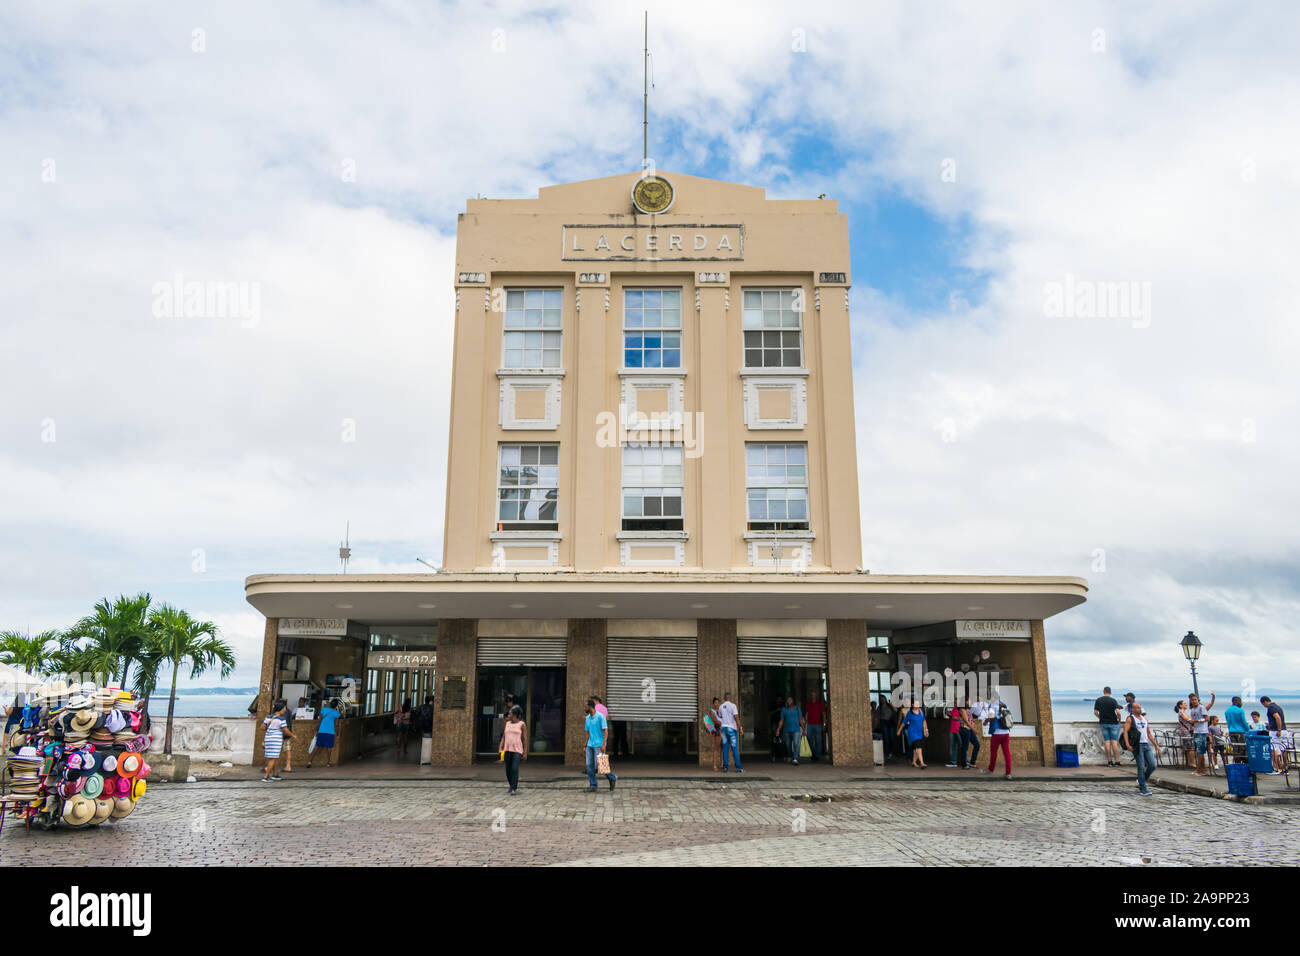 Salvador - Bahia, Brasilien - ca. September 2019: Lacerda Aufzug Gebäude, ein Blick auf den Eingang von Tome de Souza Square Stockfoto